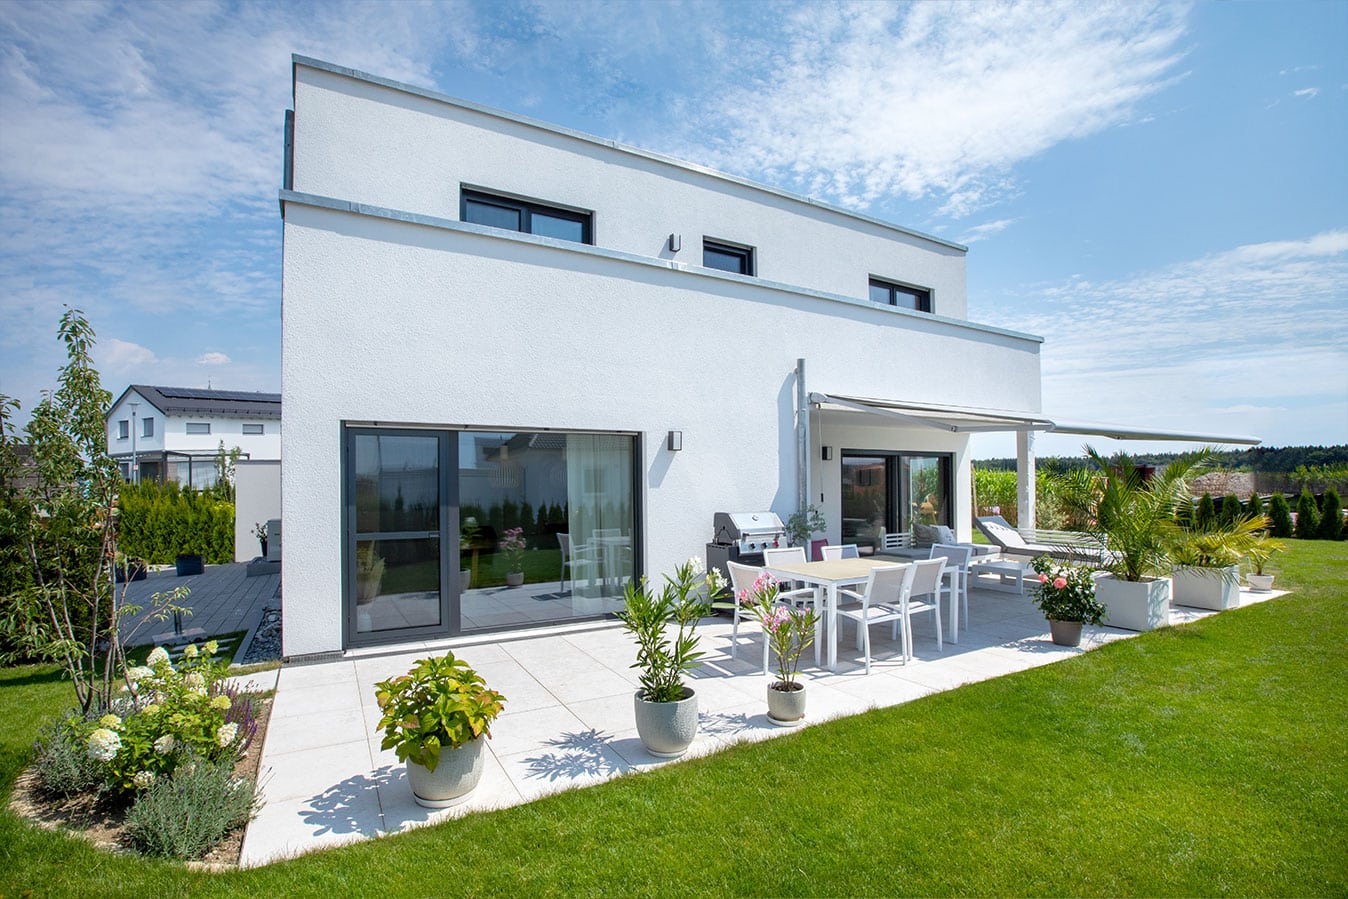 Modernes-effizienzhaus-mit-flachdach-außenansicht-garten-terrasse-fertighaus